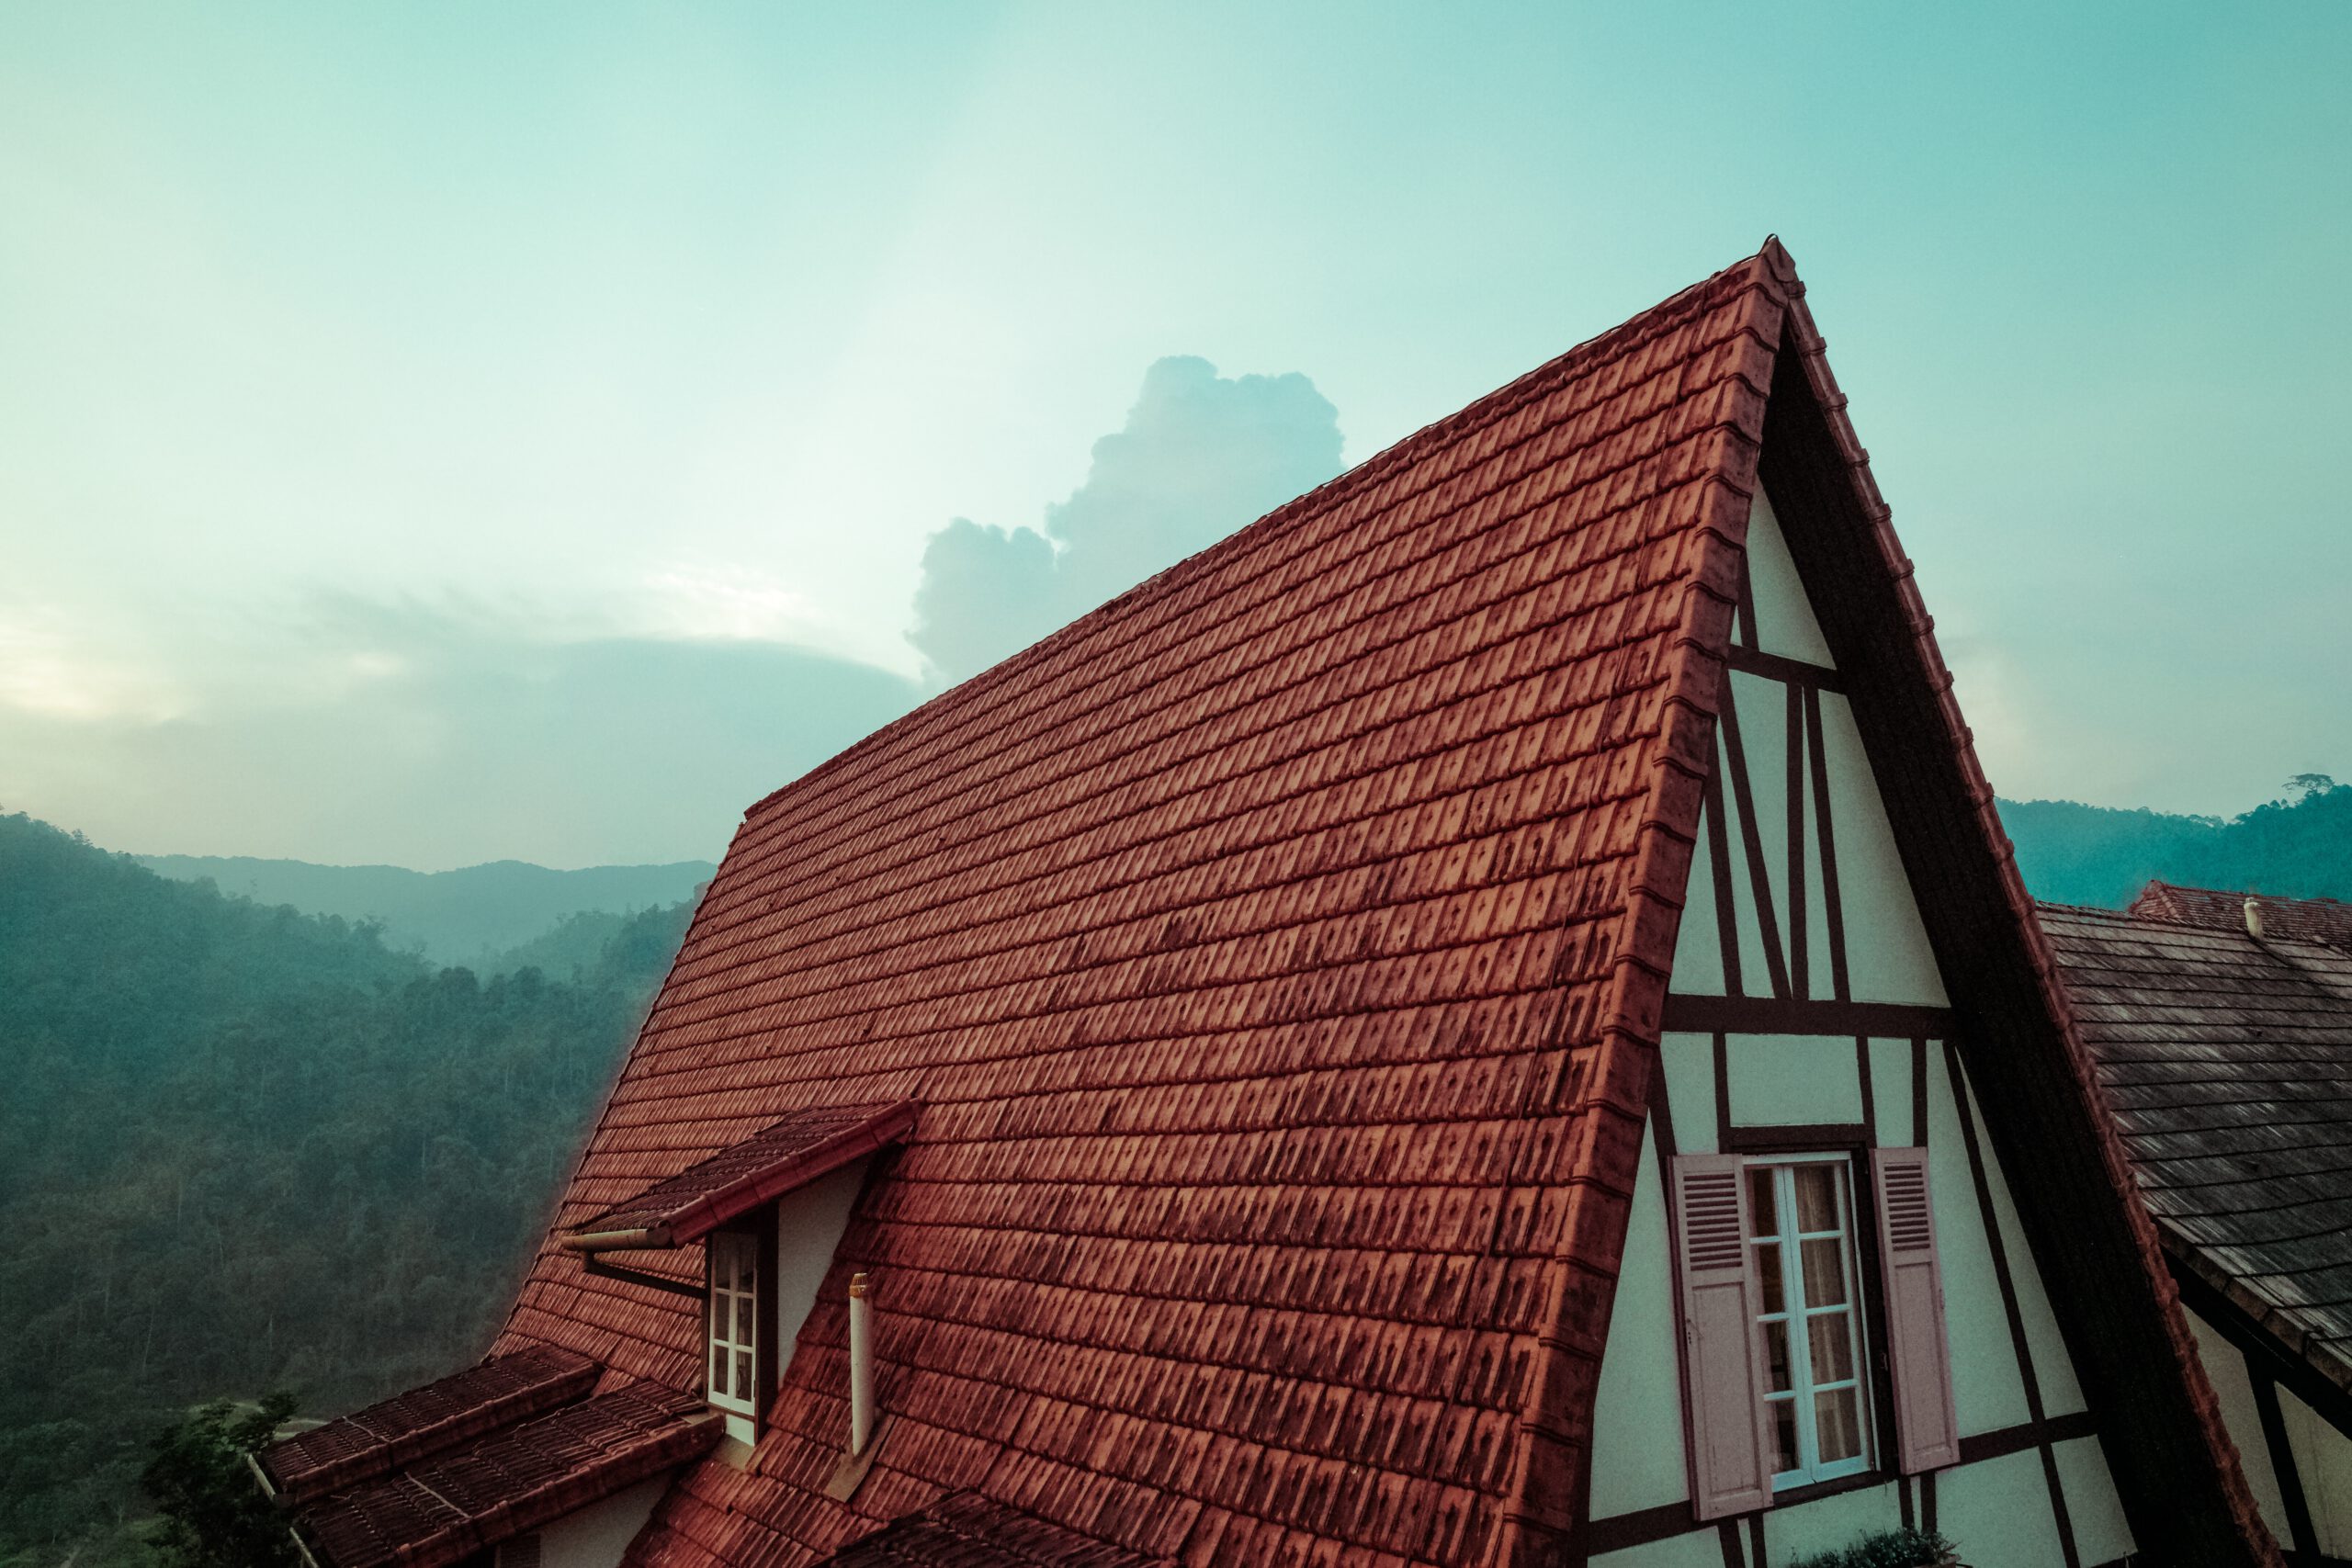 Spadzisty ocieplony dach domu jednorodzinnego pokryty cegłą